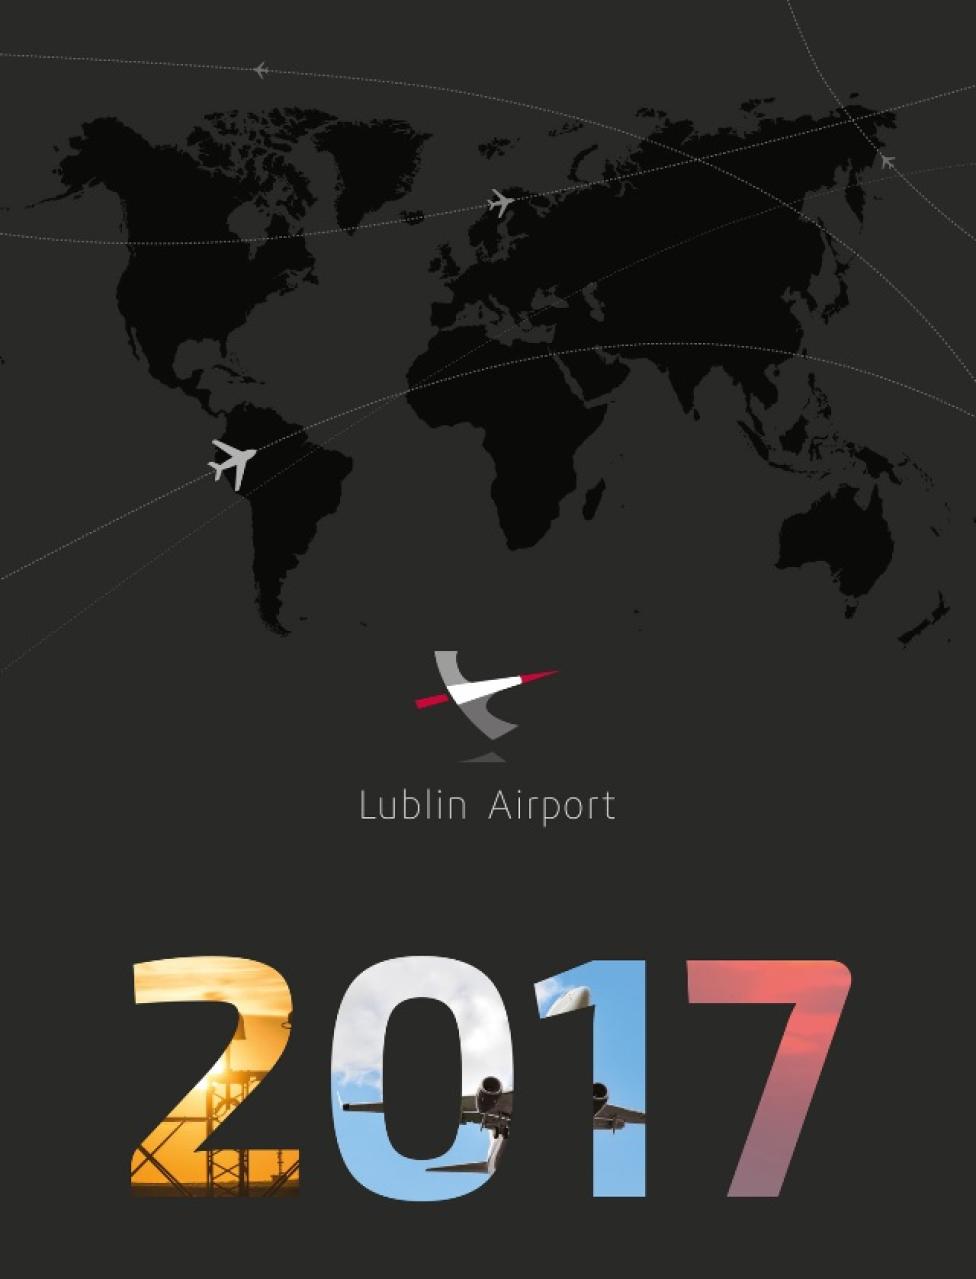 Port Lotniczy Lublin we współpracy ze spotterami wydał kalendarz na 2017 rok (fot. Port Lotniczy Lublin)